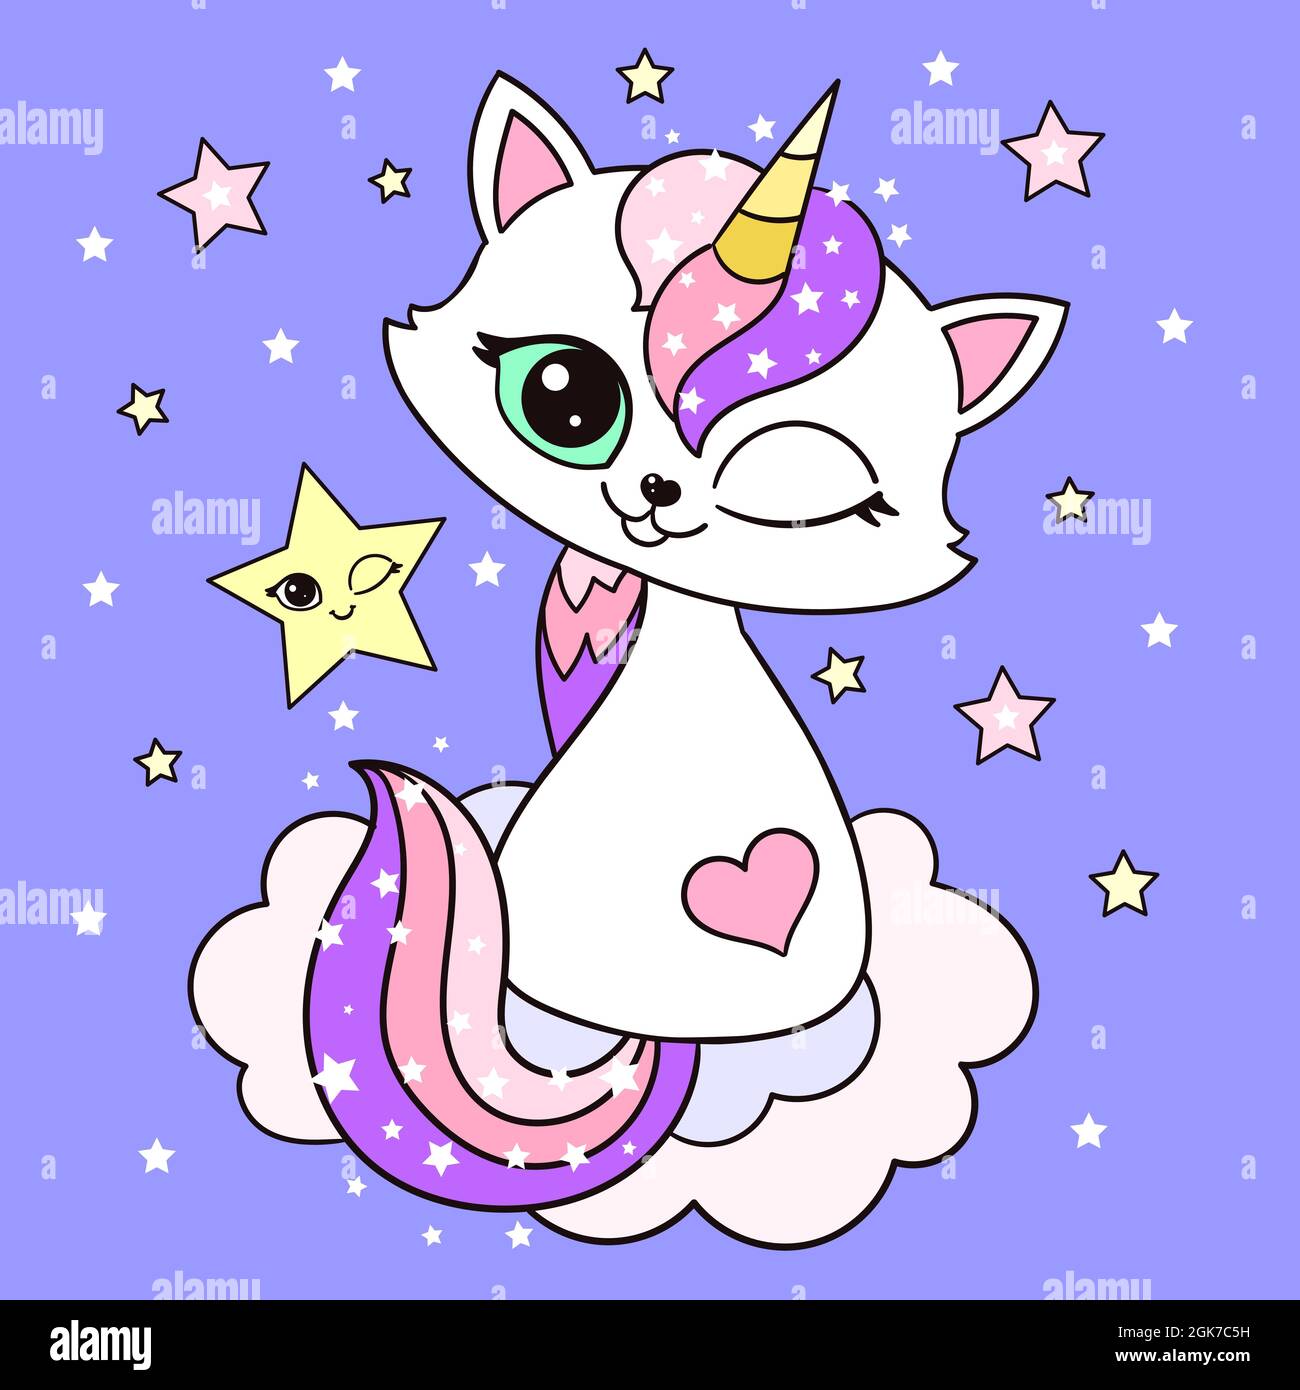 Adorable dessin animé arc-en-ciel chat licorne.Vecteur Illustration de Vecteur